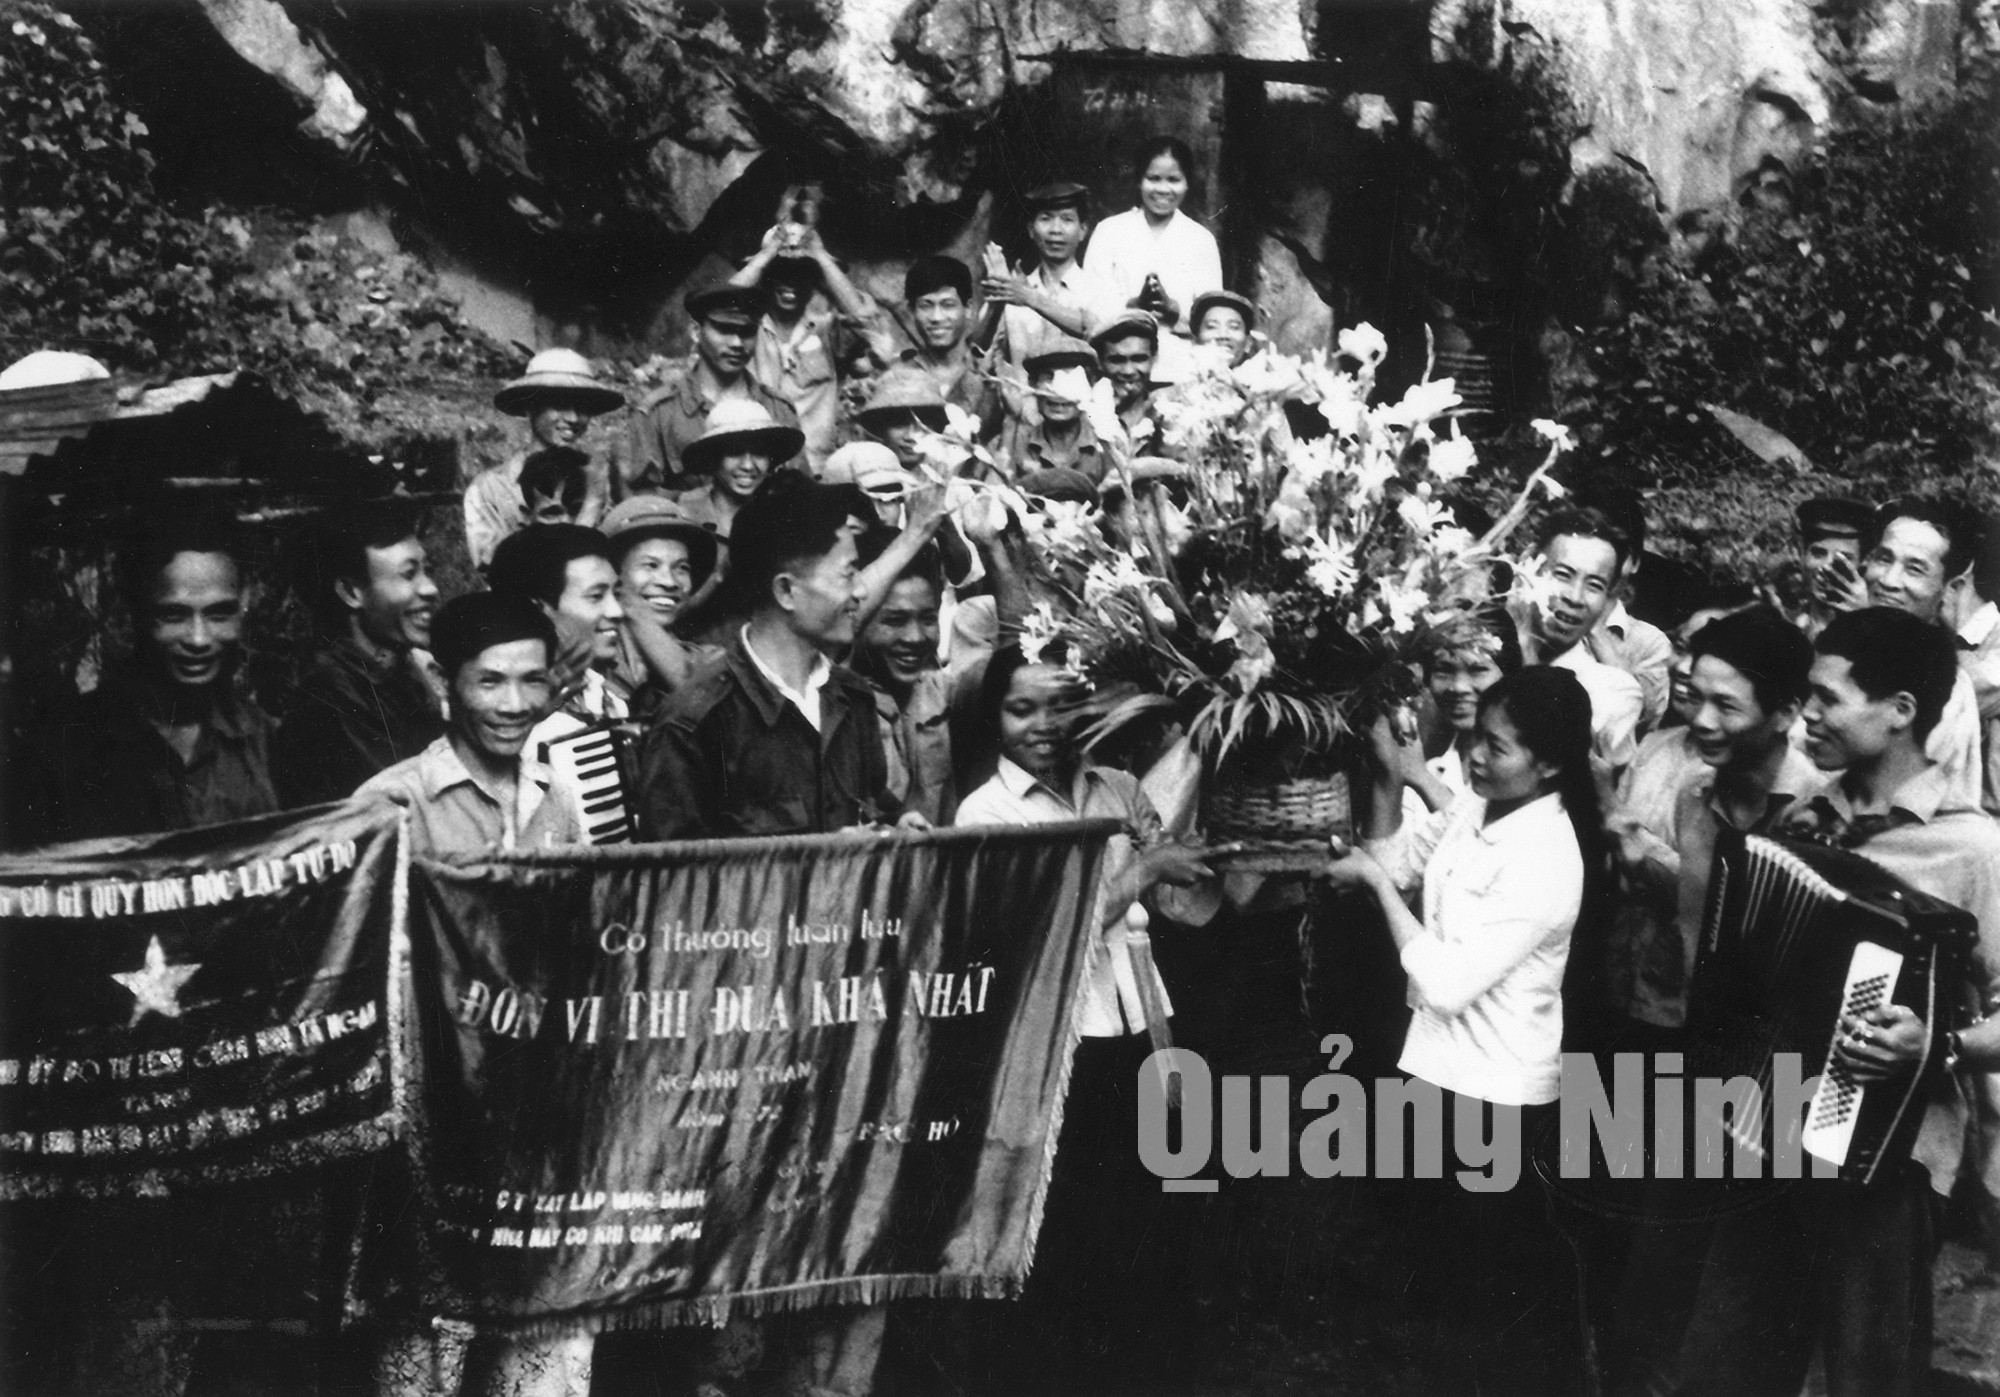 Nhà máy cơ khí Cẩm Phả đón nhận cờ thi đua khá nhất và lẵng hoa của Chủ tịch nước Tôn Đức Thắng năm 1972. Ảnh: Đoàn Đạt